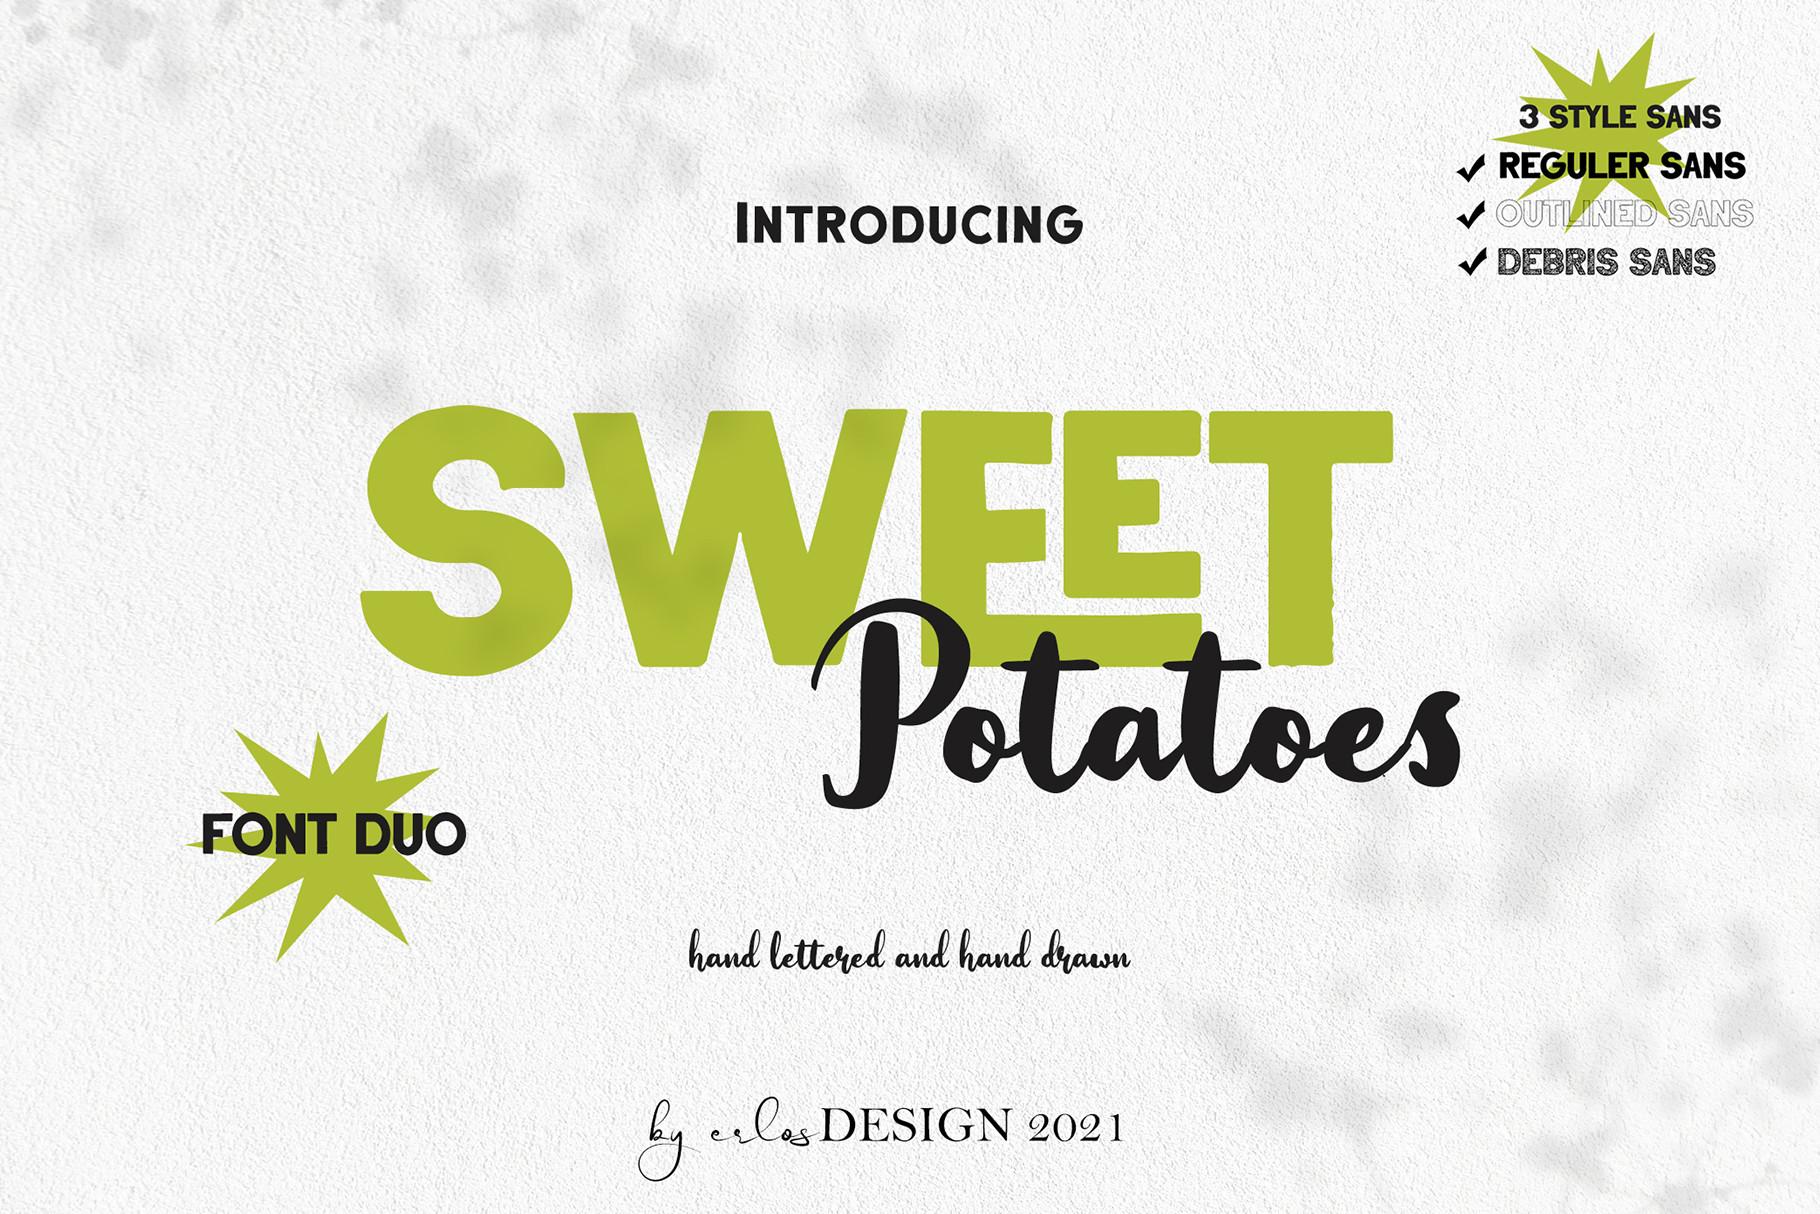 Sweet Potatoes Font